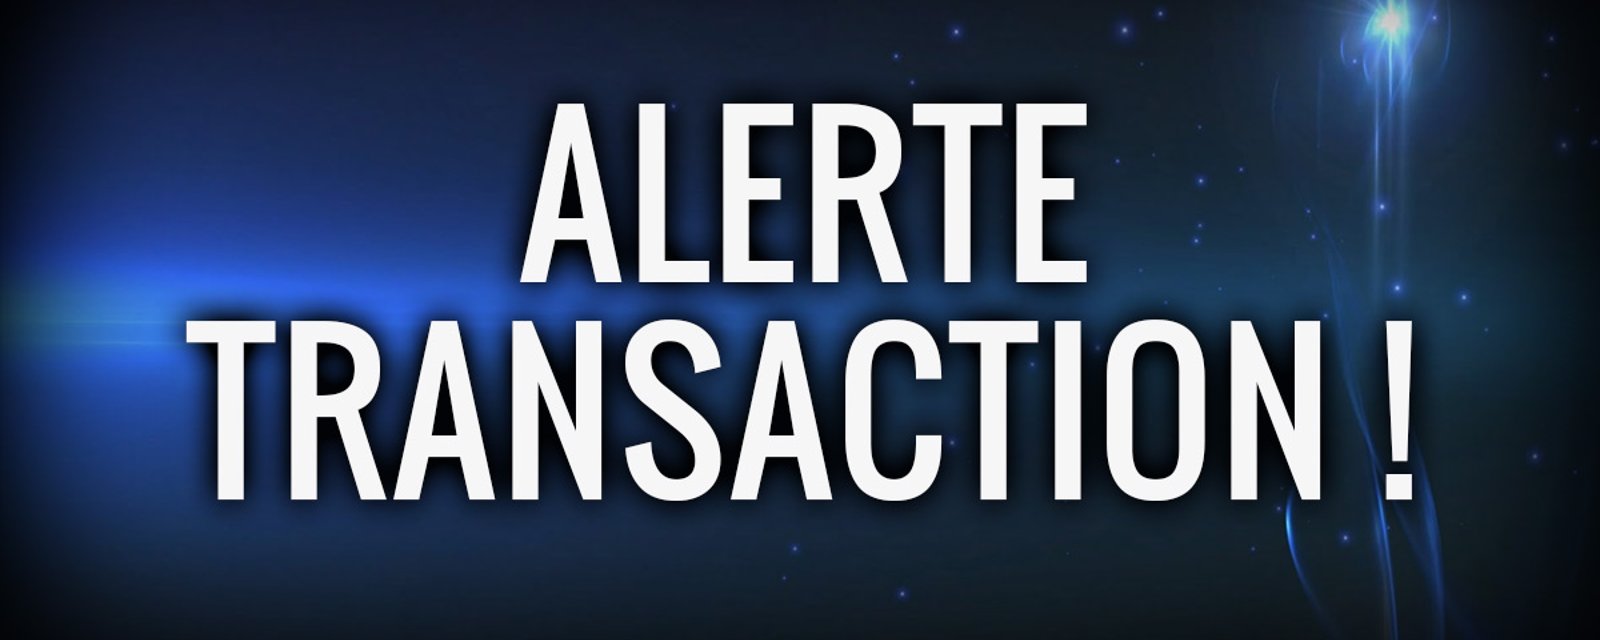 Deux transactions mineures sont annoncées dans la LNH!